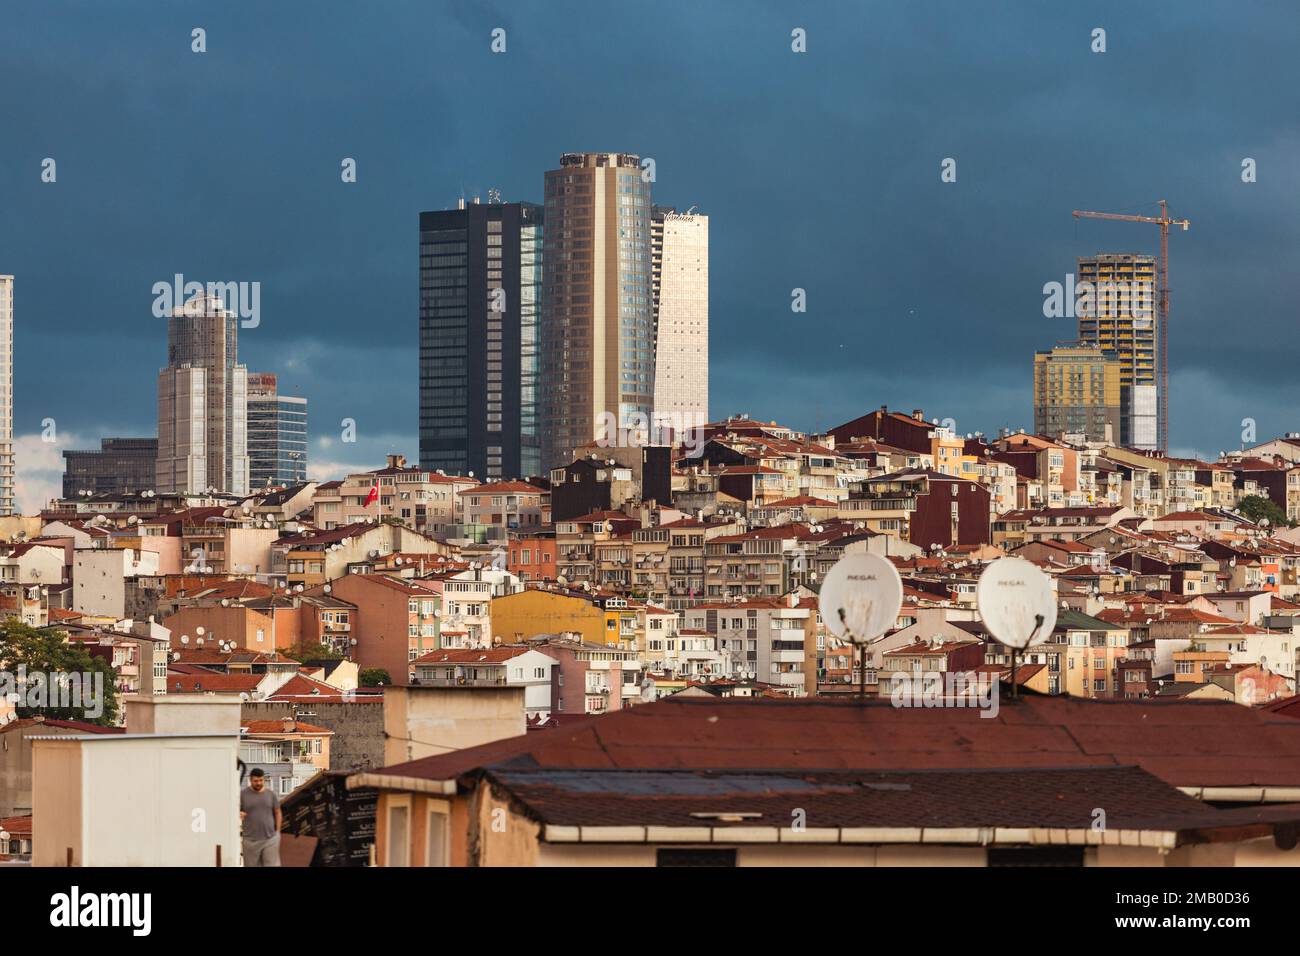 Paysage urbain de la partie européenne d'Istanbul. La partie moderne de la ville avec des tours d'affaires de sociétés internationales, gratte-ciel. Istanbul, Tur Banque D'Images